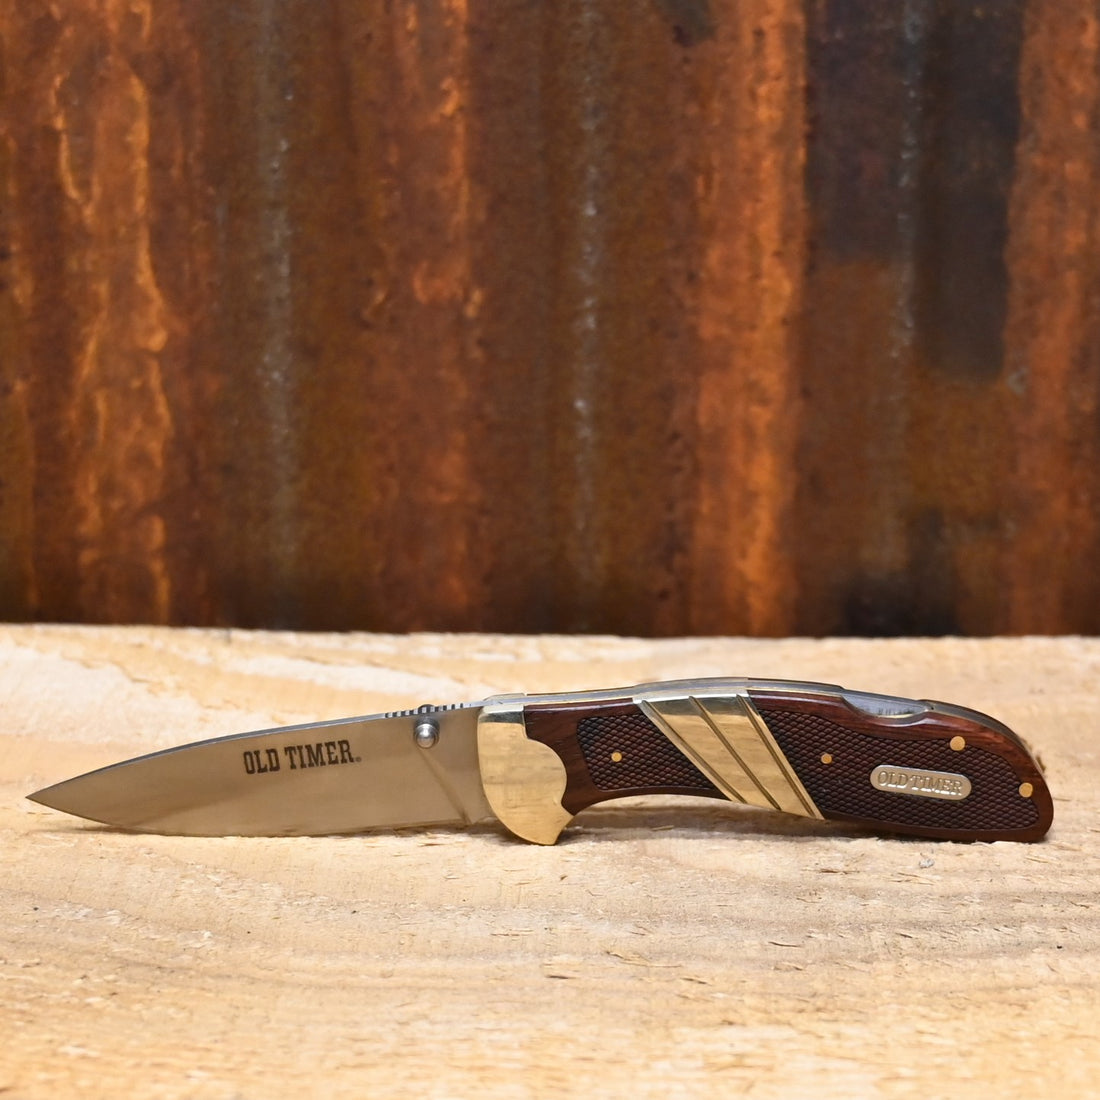 Schrade Old Timer Large Lockback Clip Folder Knife - 7Cr17MoV Steel - Wood Handle - Pocket Clip - Box view of knife